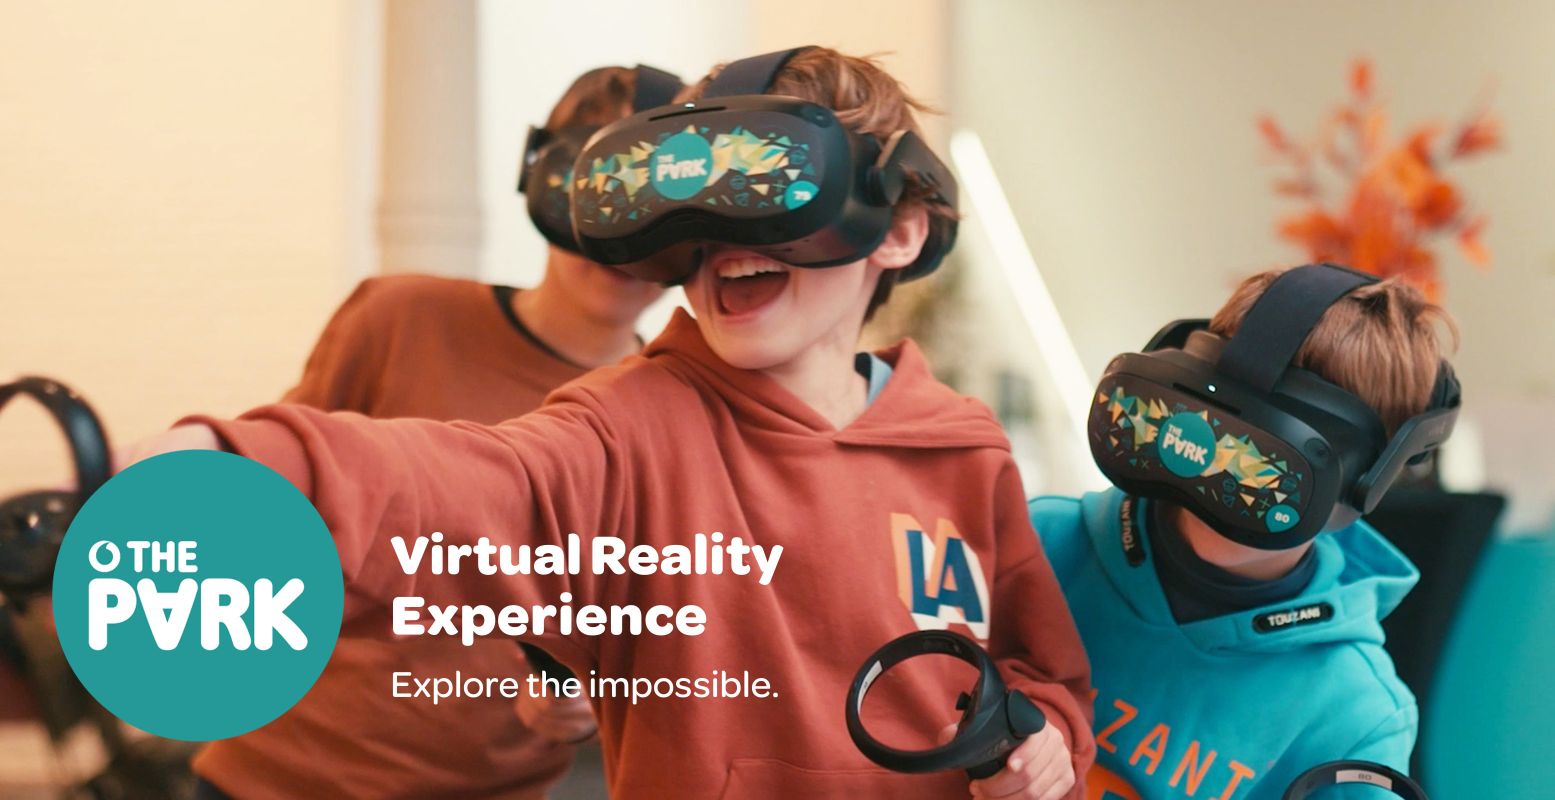 Ren, spring en beleef met het hele gezin avonturen in een waanzinnige VR-wereld. Foto: The Park Playground